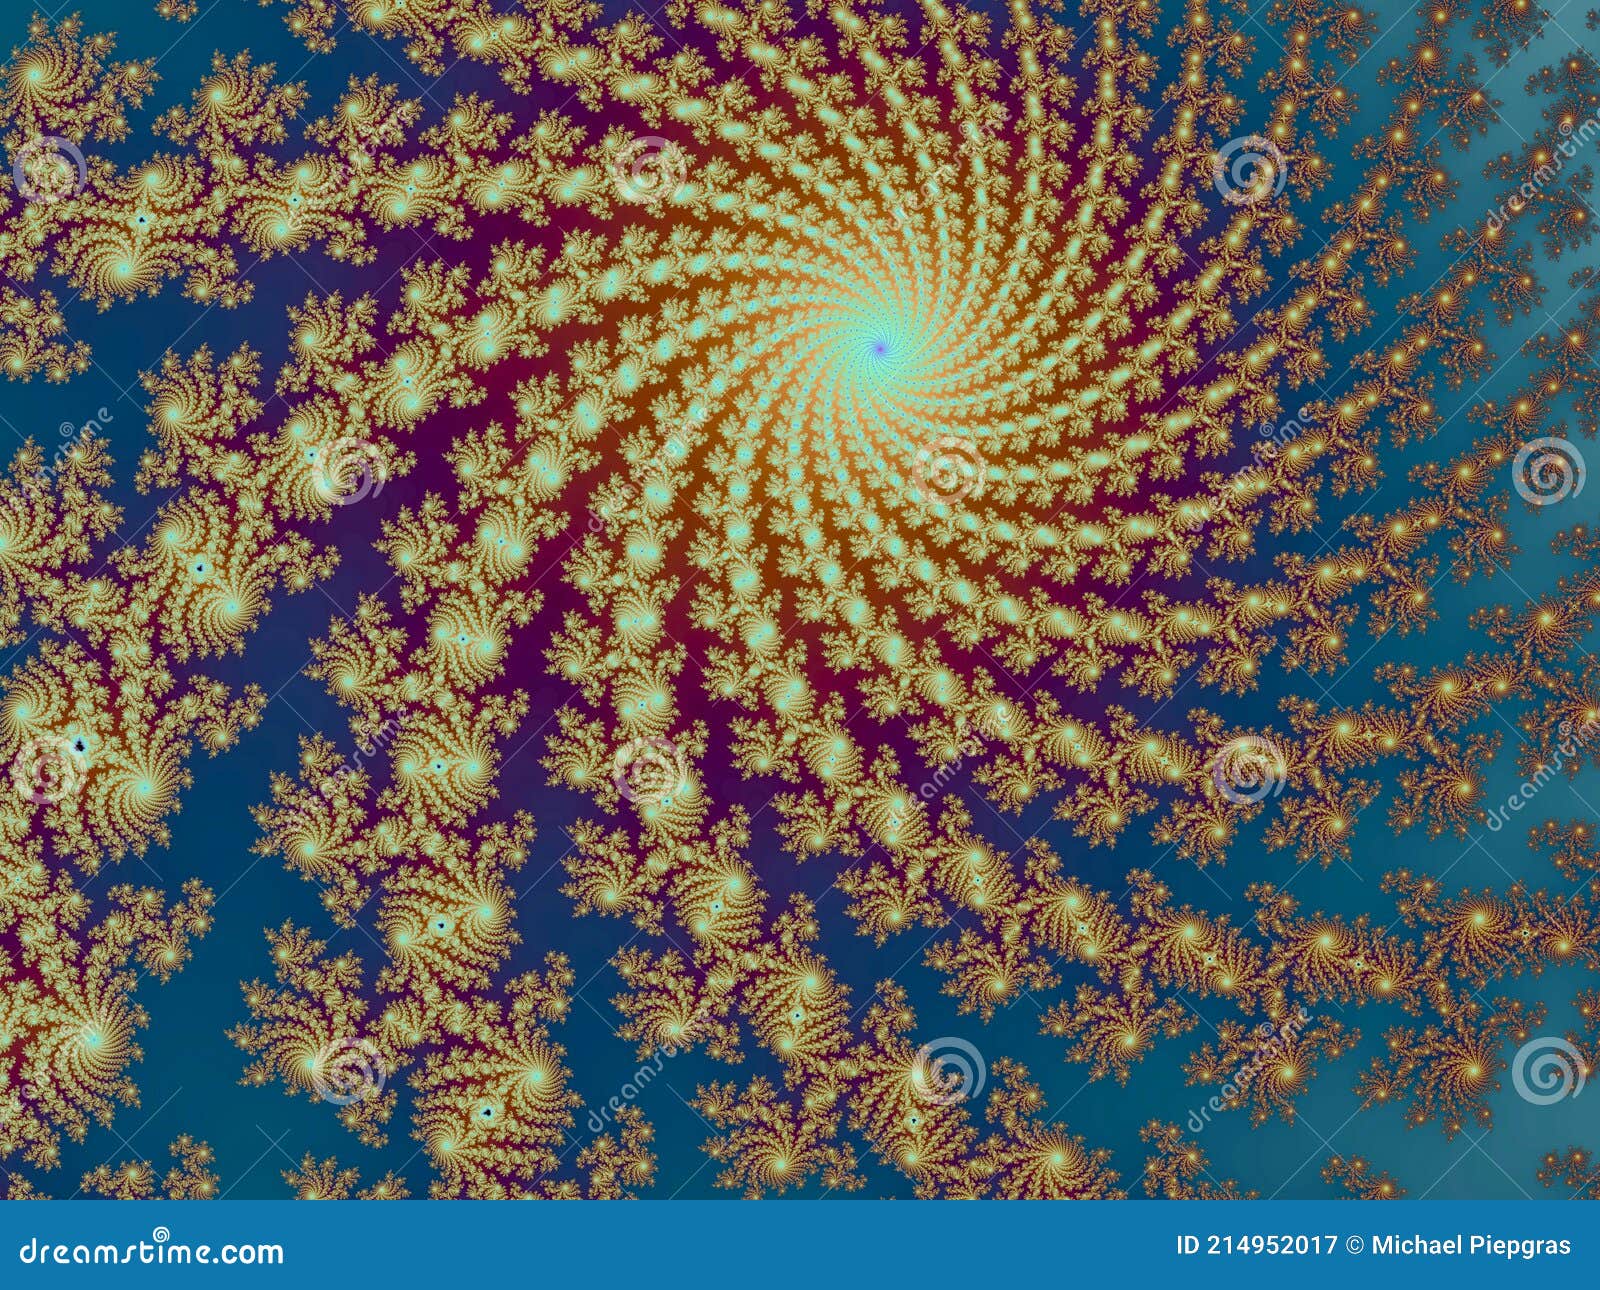 fractal zoom download